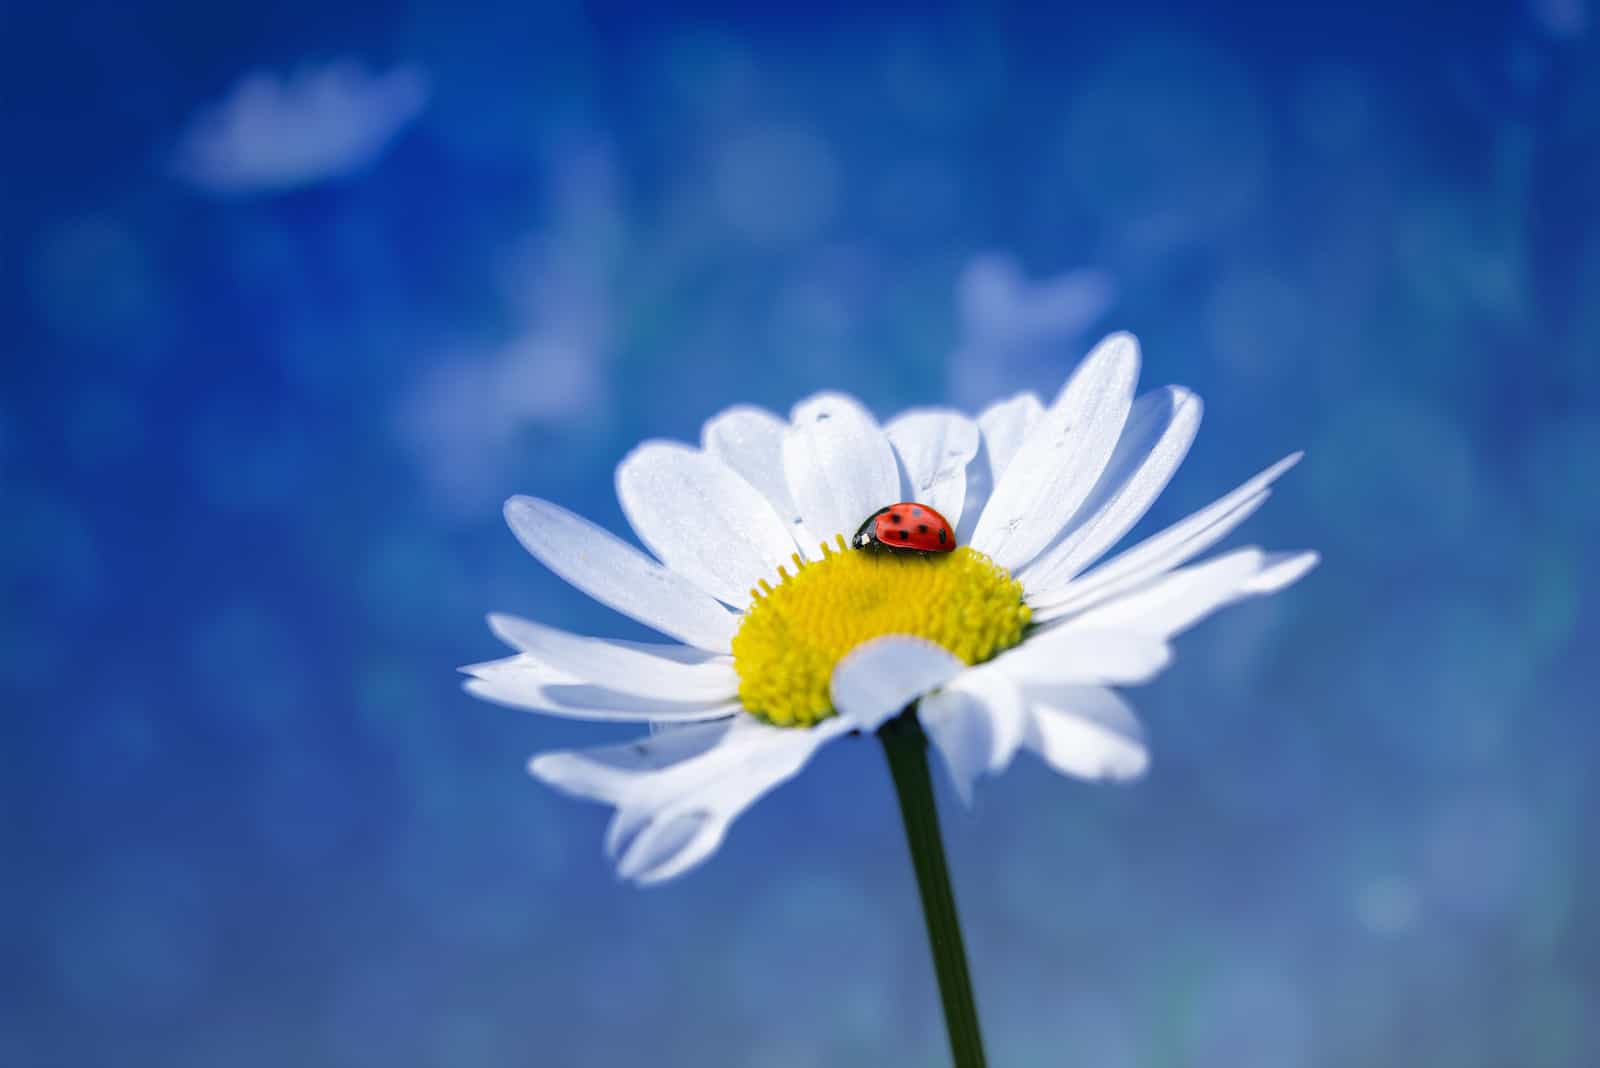 Coccinelle est assise sur une fleur